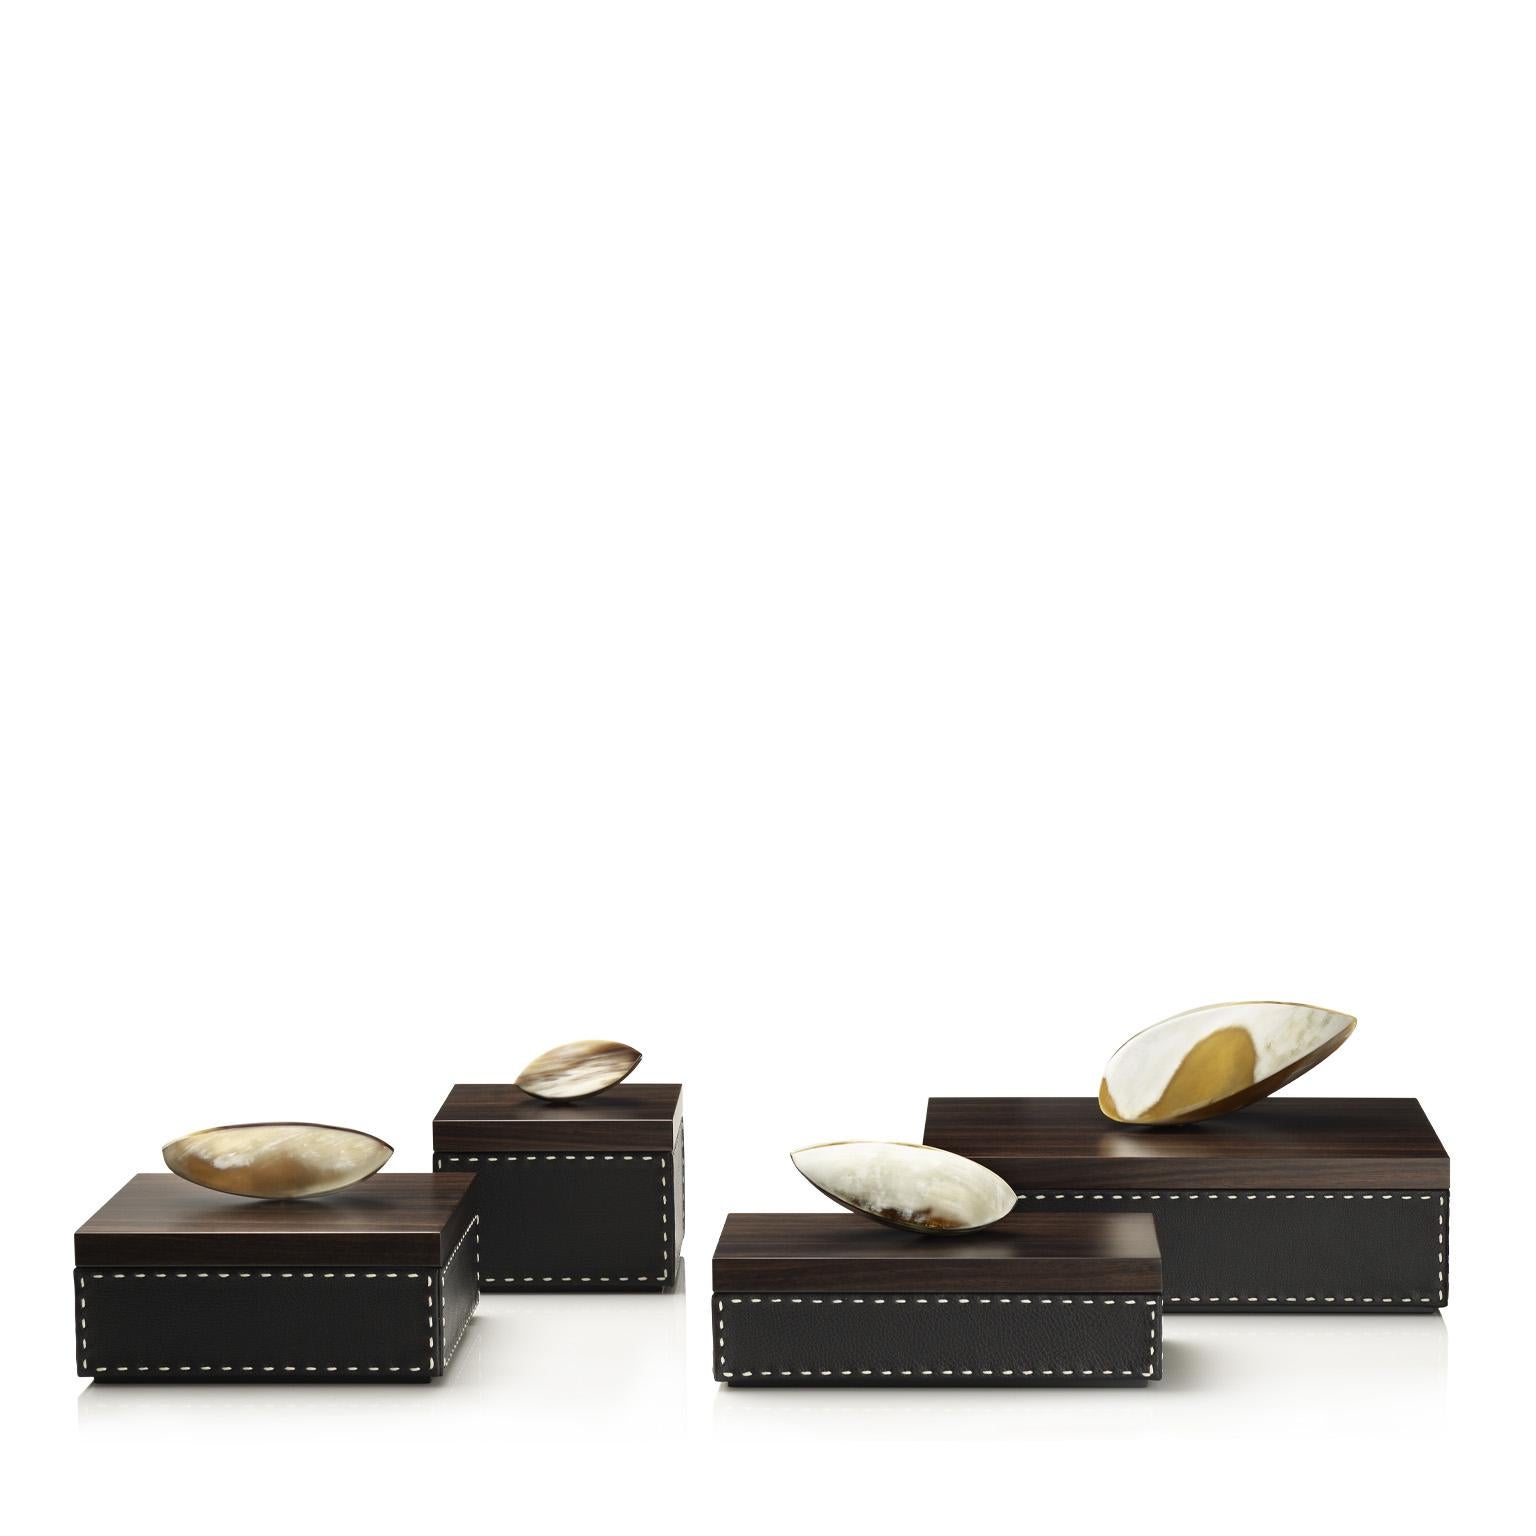 Capricia Box in Pebbled Leather with Handle in Corno Italiano, Mod. 4478 In New Condition For Sale In Recanati, Macerata